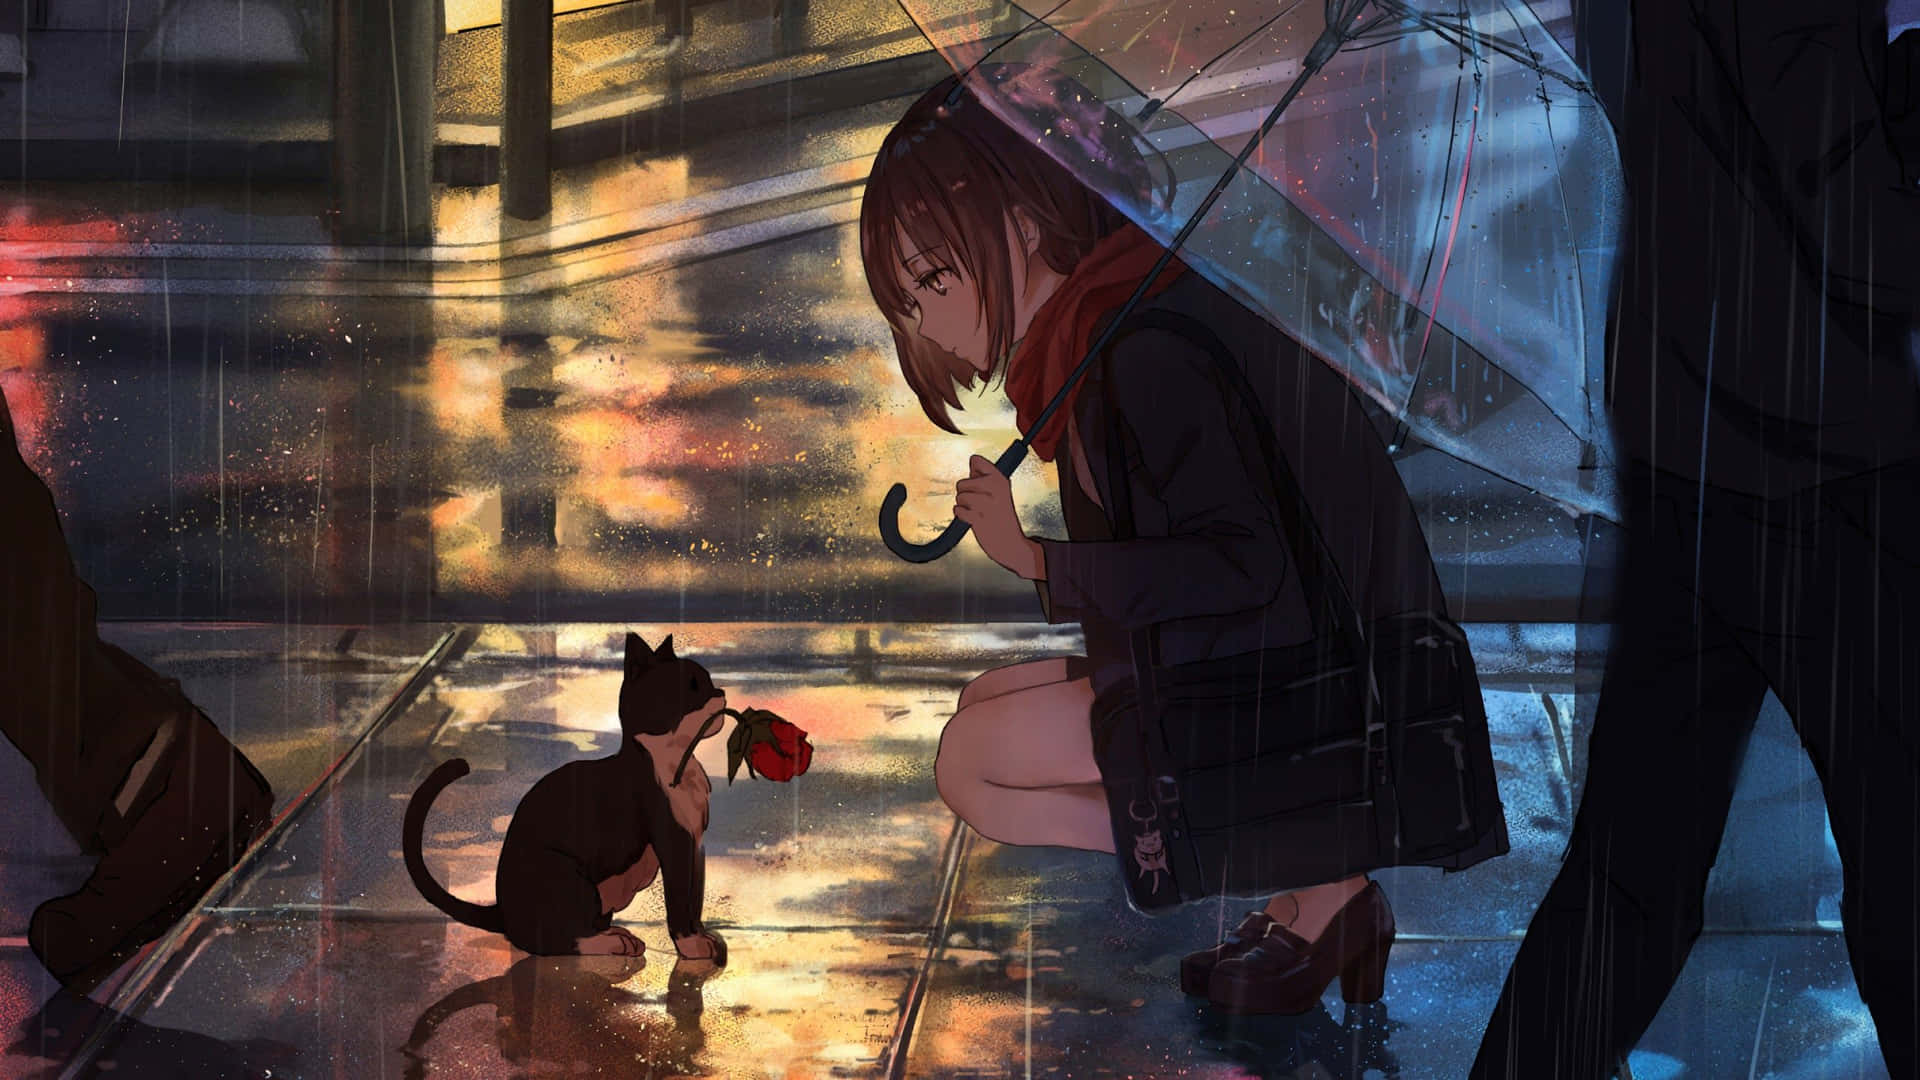 Enjoy a peaceful, melancholic day in the rain